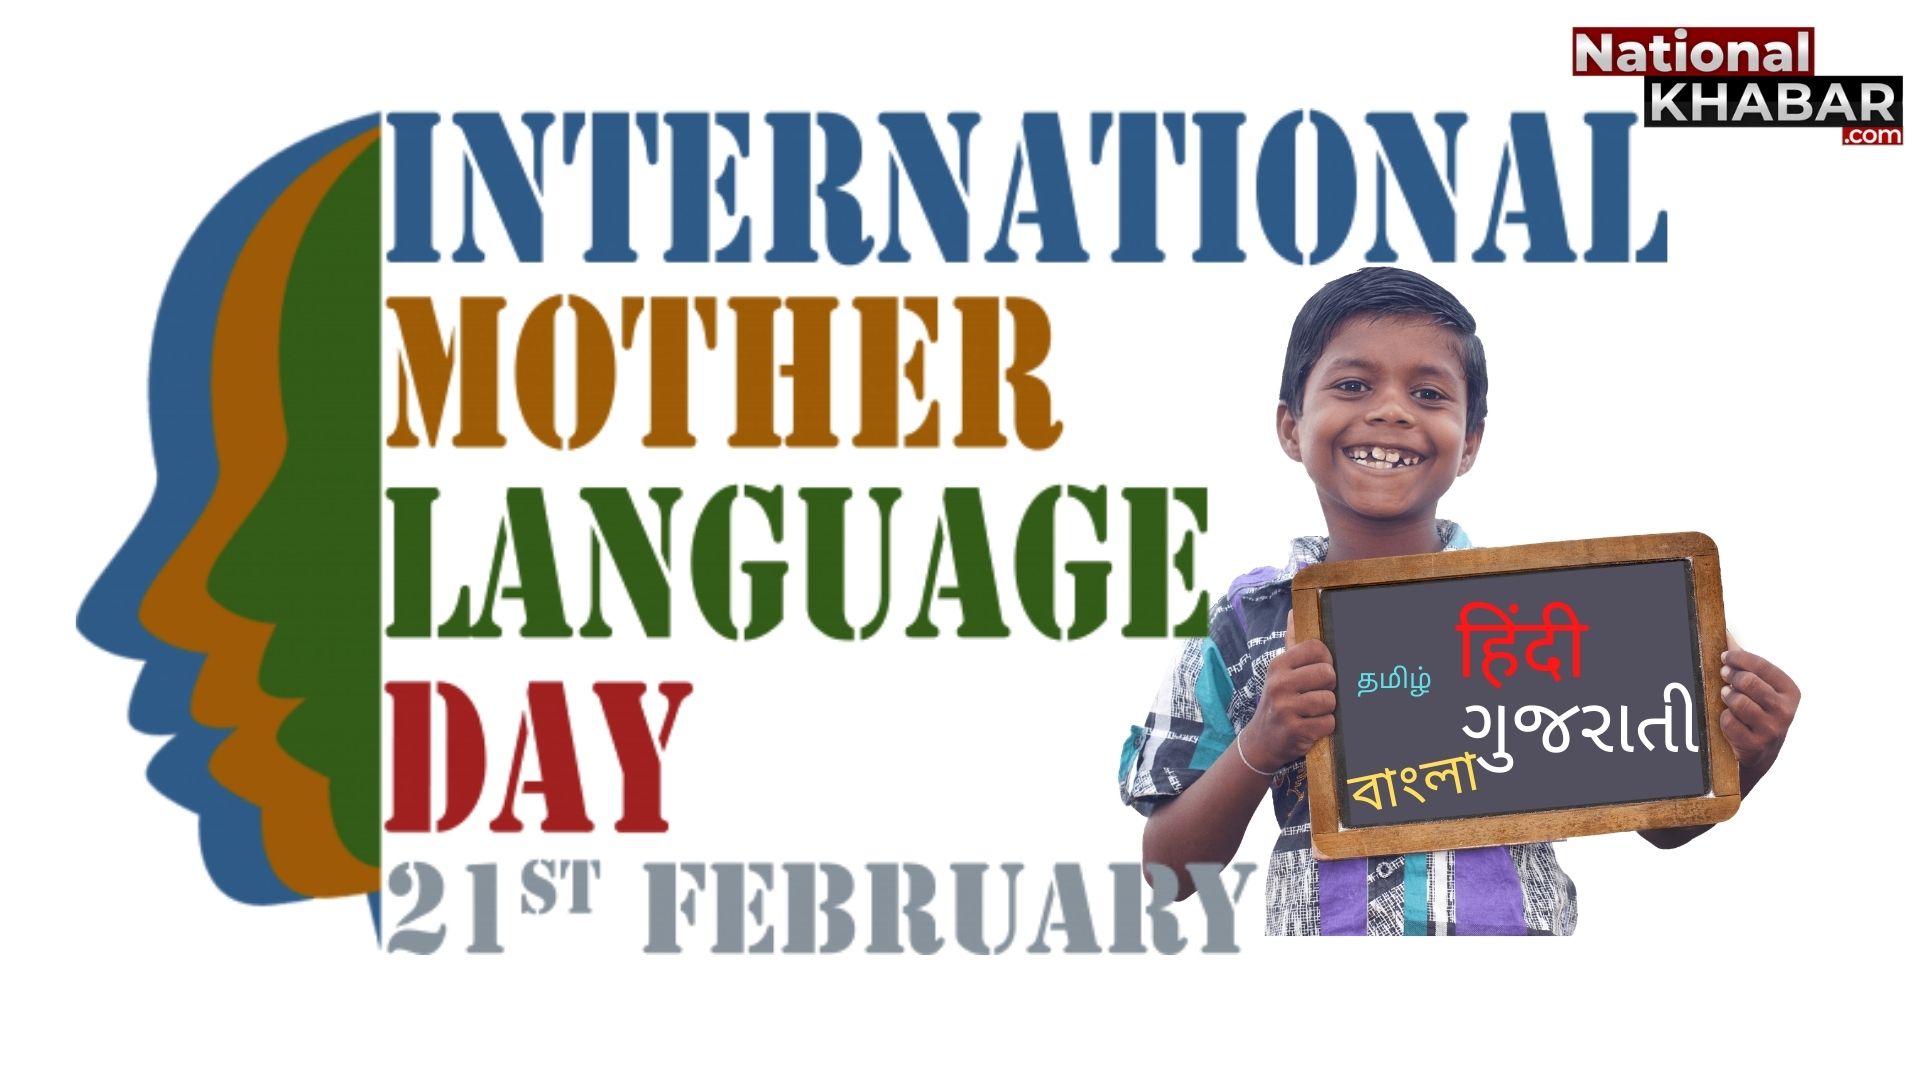 21 फरवरी International Mother Language Day: जानें क्यूं मनाया जाता है, अंतर्राष्ट्रीय मातृभाषा दिवस